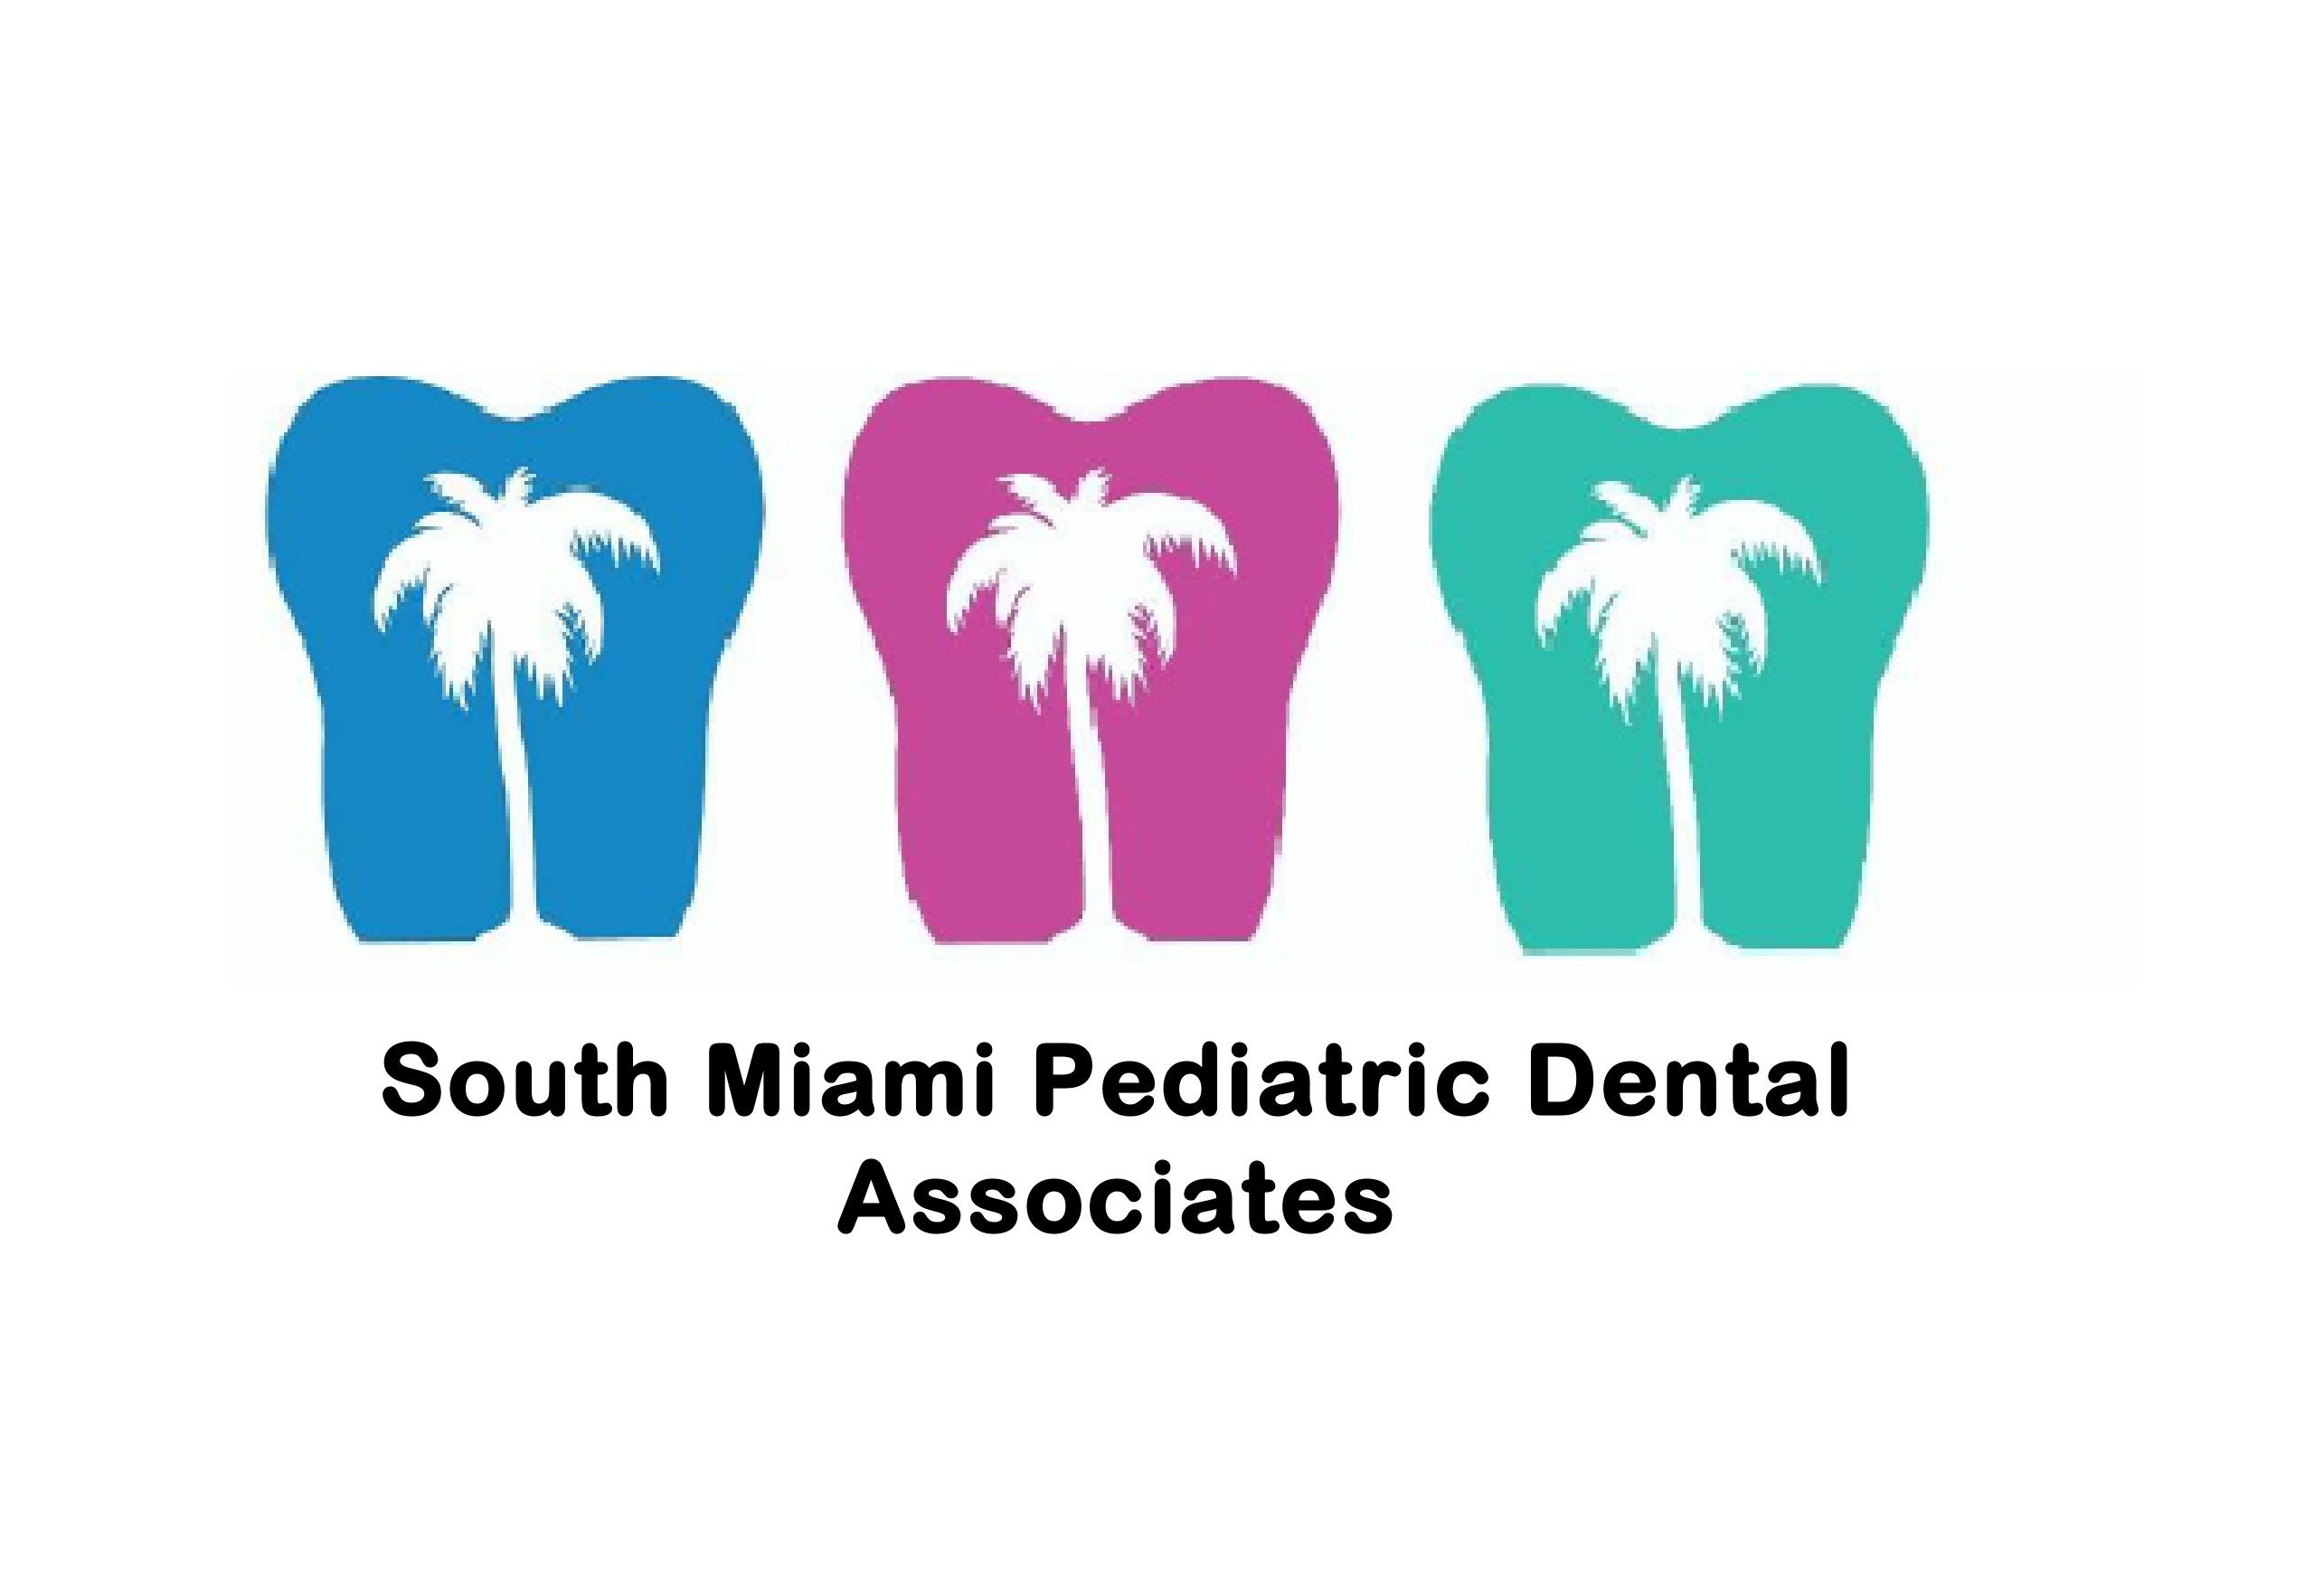 South Miami Pediatric Dentistry